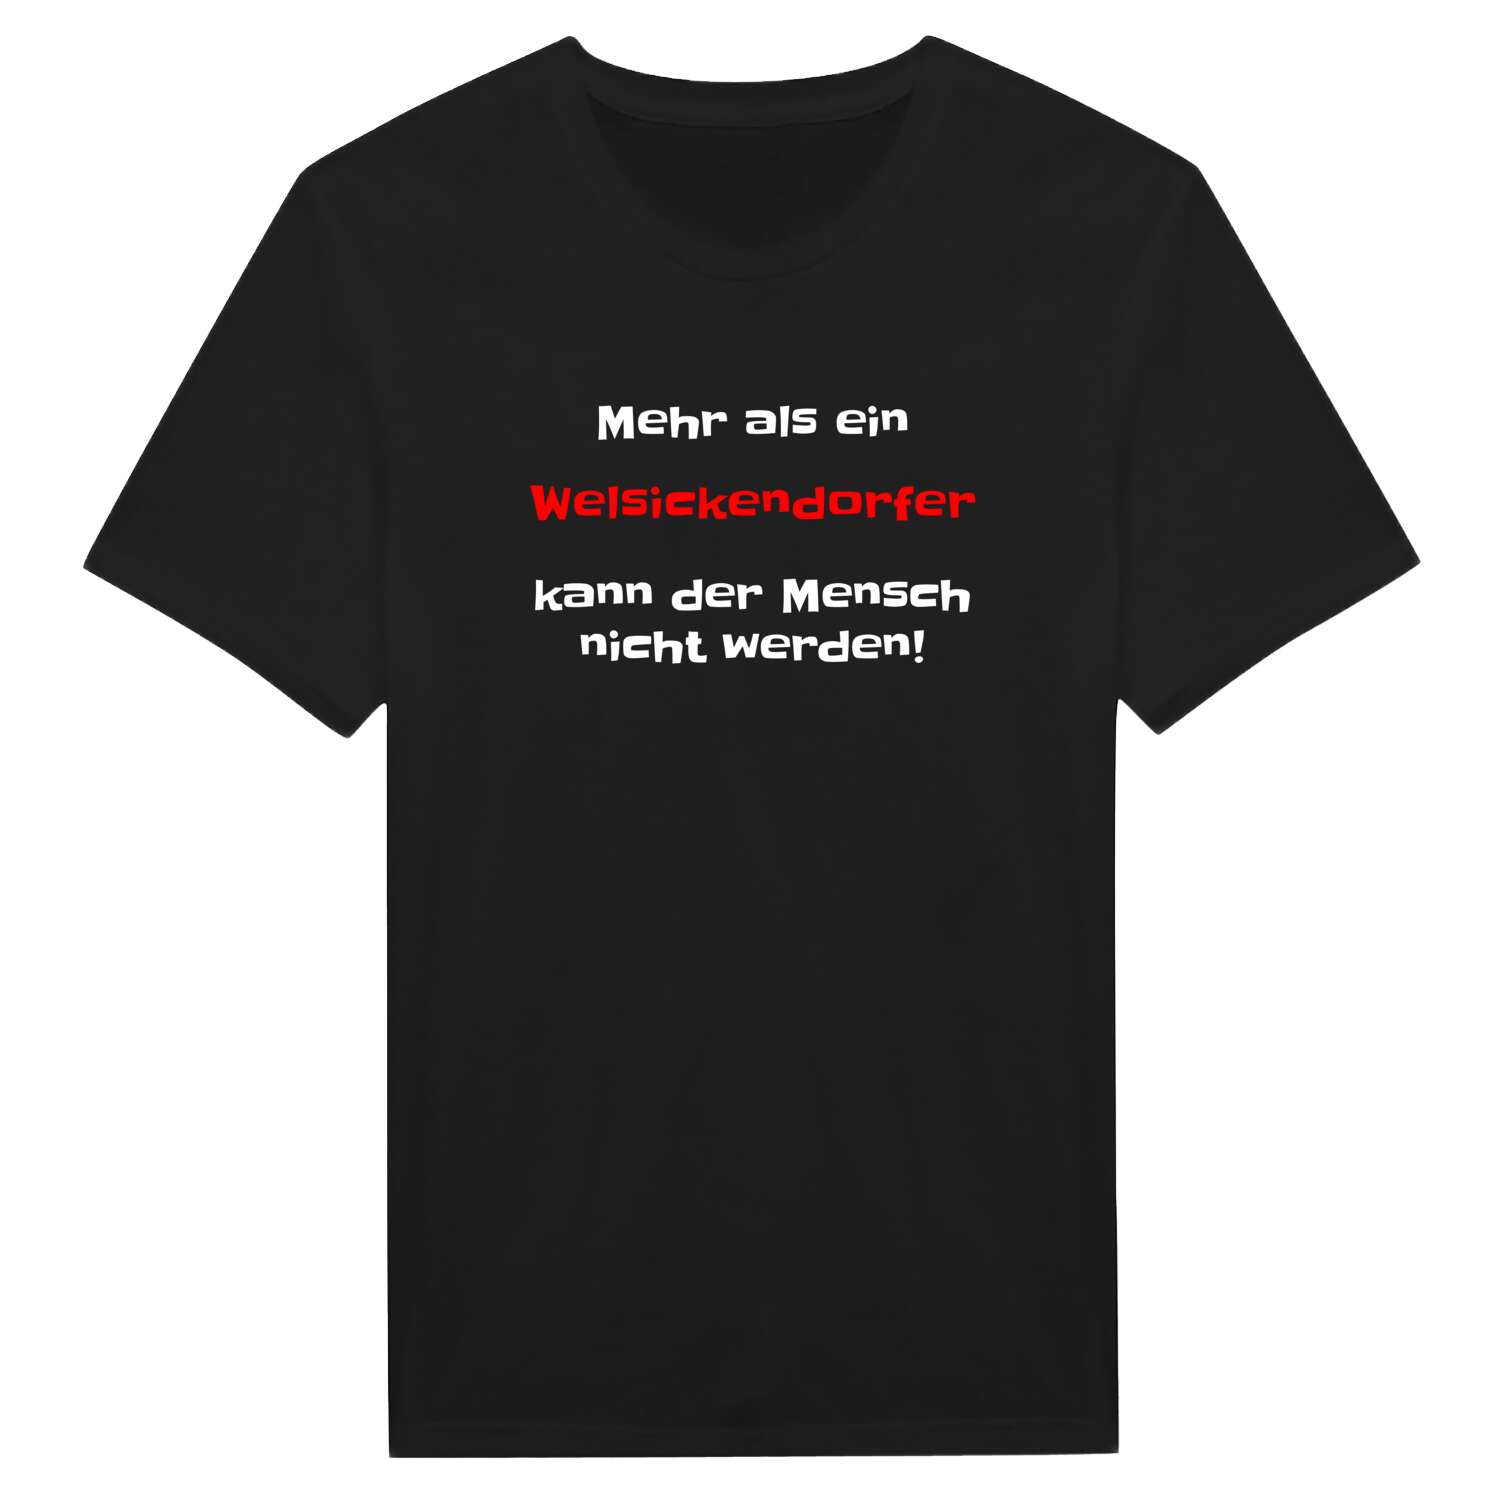 Welsickendorf T-Shirt »Mehr als ein«